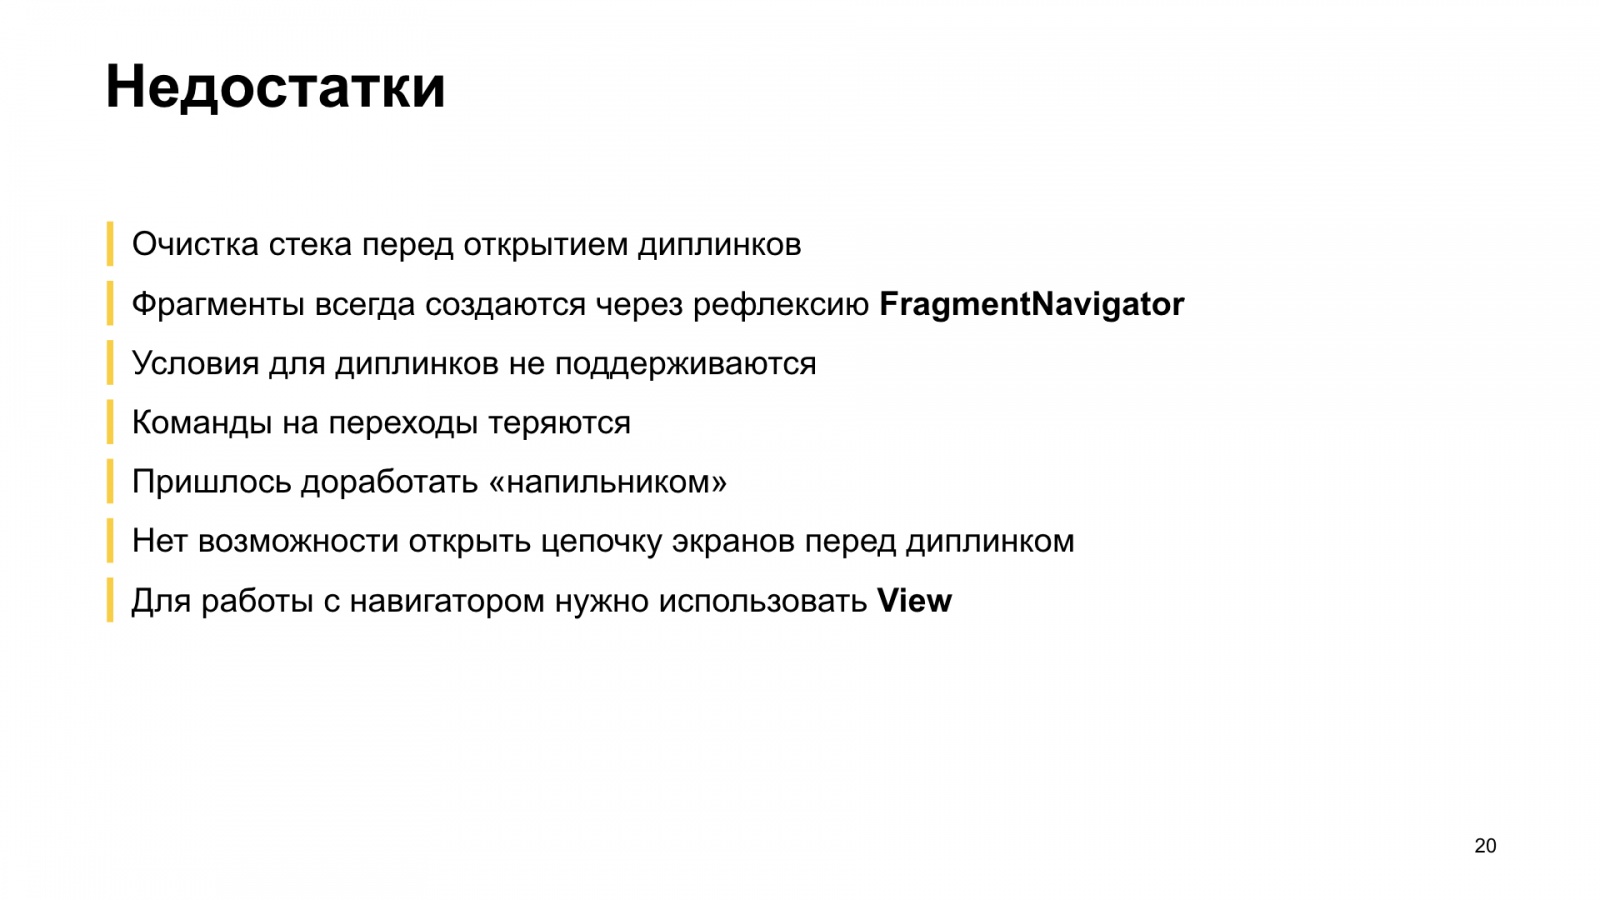 Как мы внедряли навигацию из Jetpack в боевое приложение. Доклад Яндекс.Еды - 21